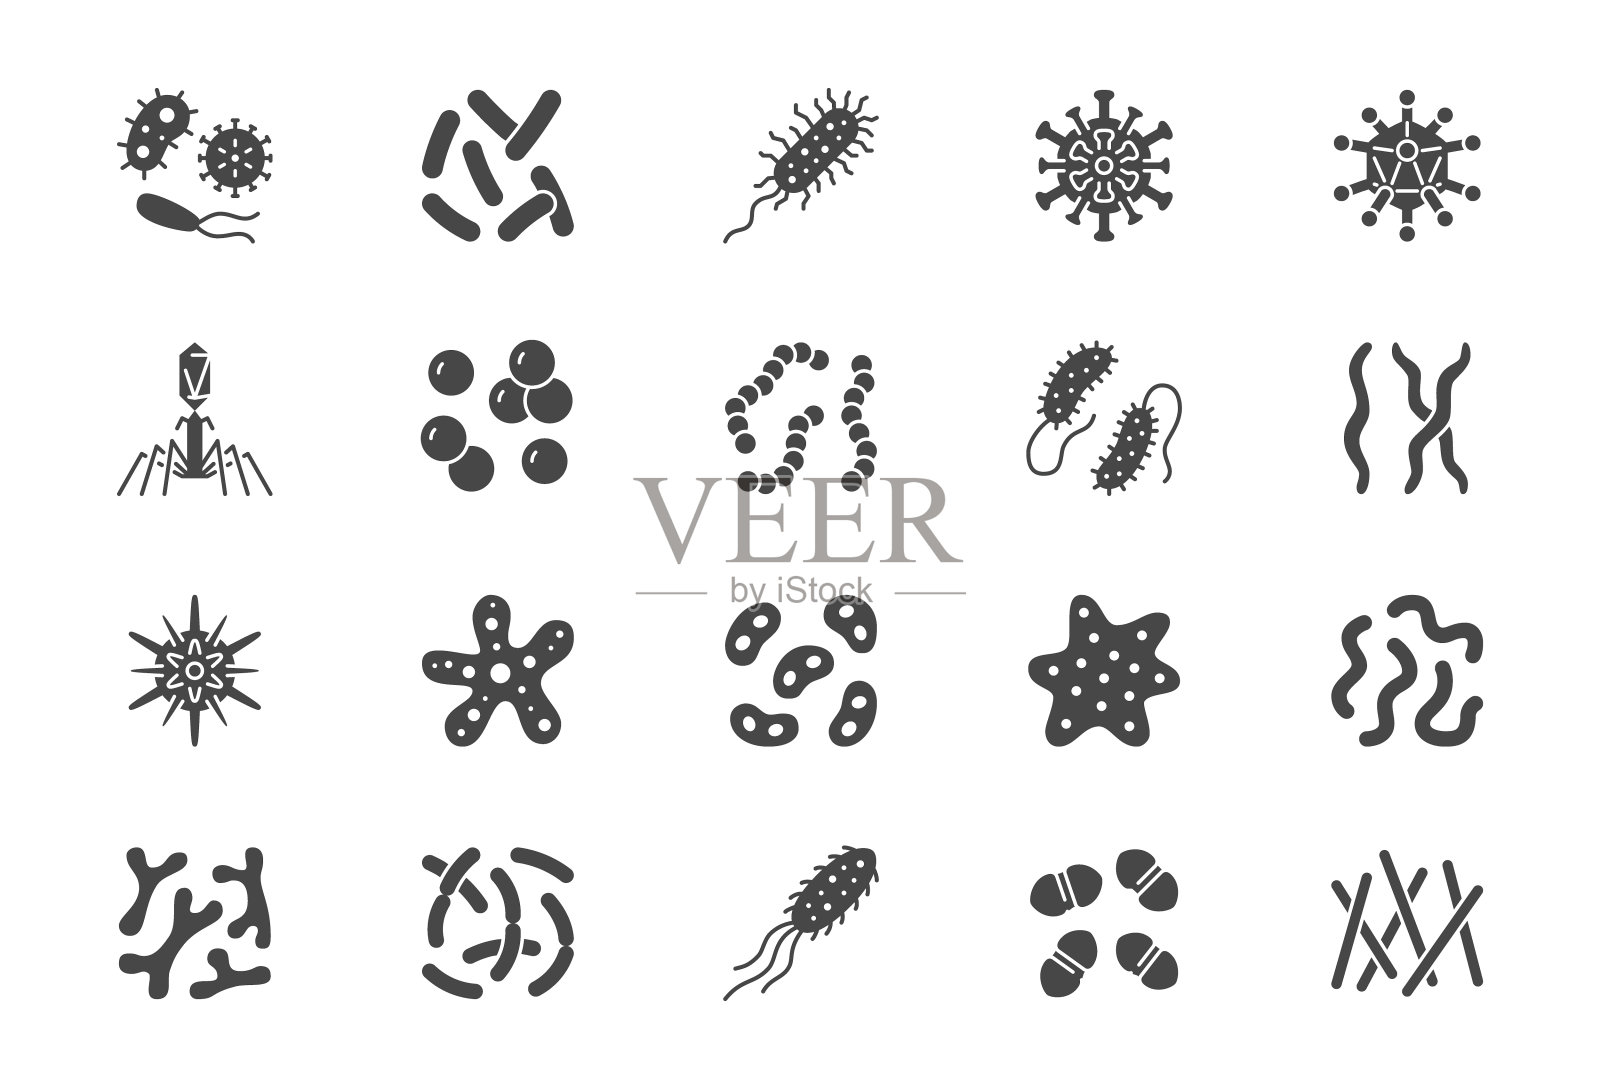 细菌，病毒，微生物象形文字图标。矢量插图包括微生物图标，细菌，霉菌，细胞，益生菌剪影象形图微生物信息图图标素材